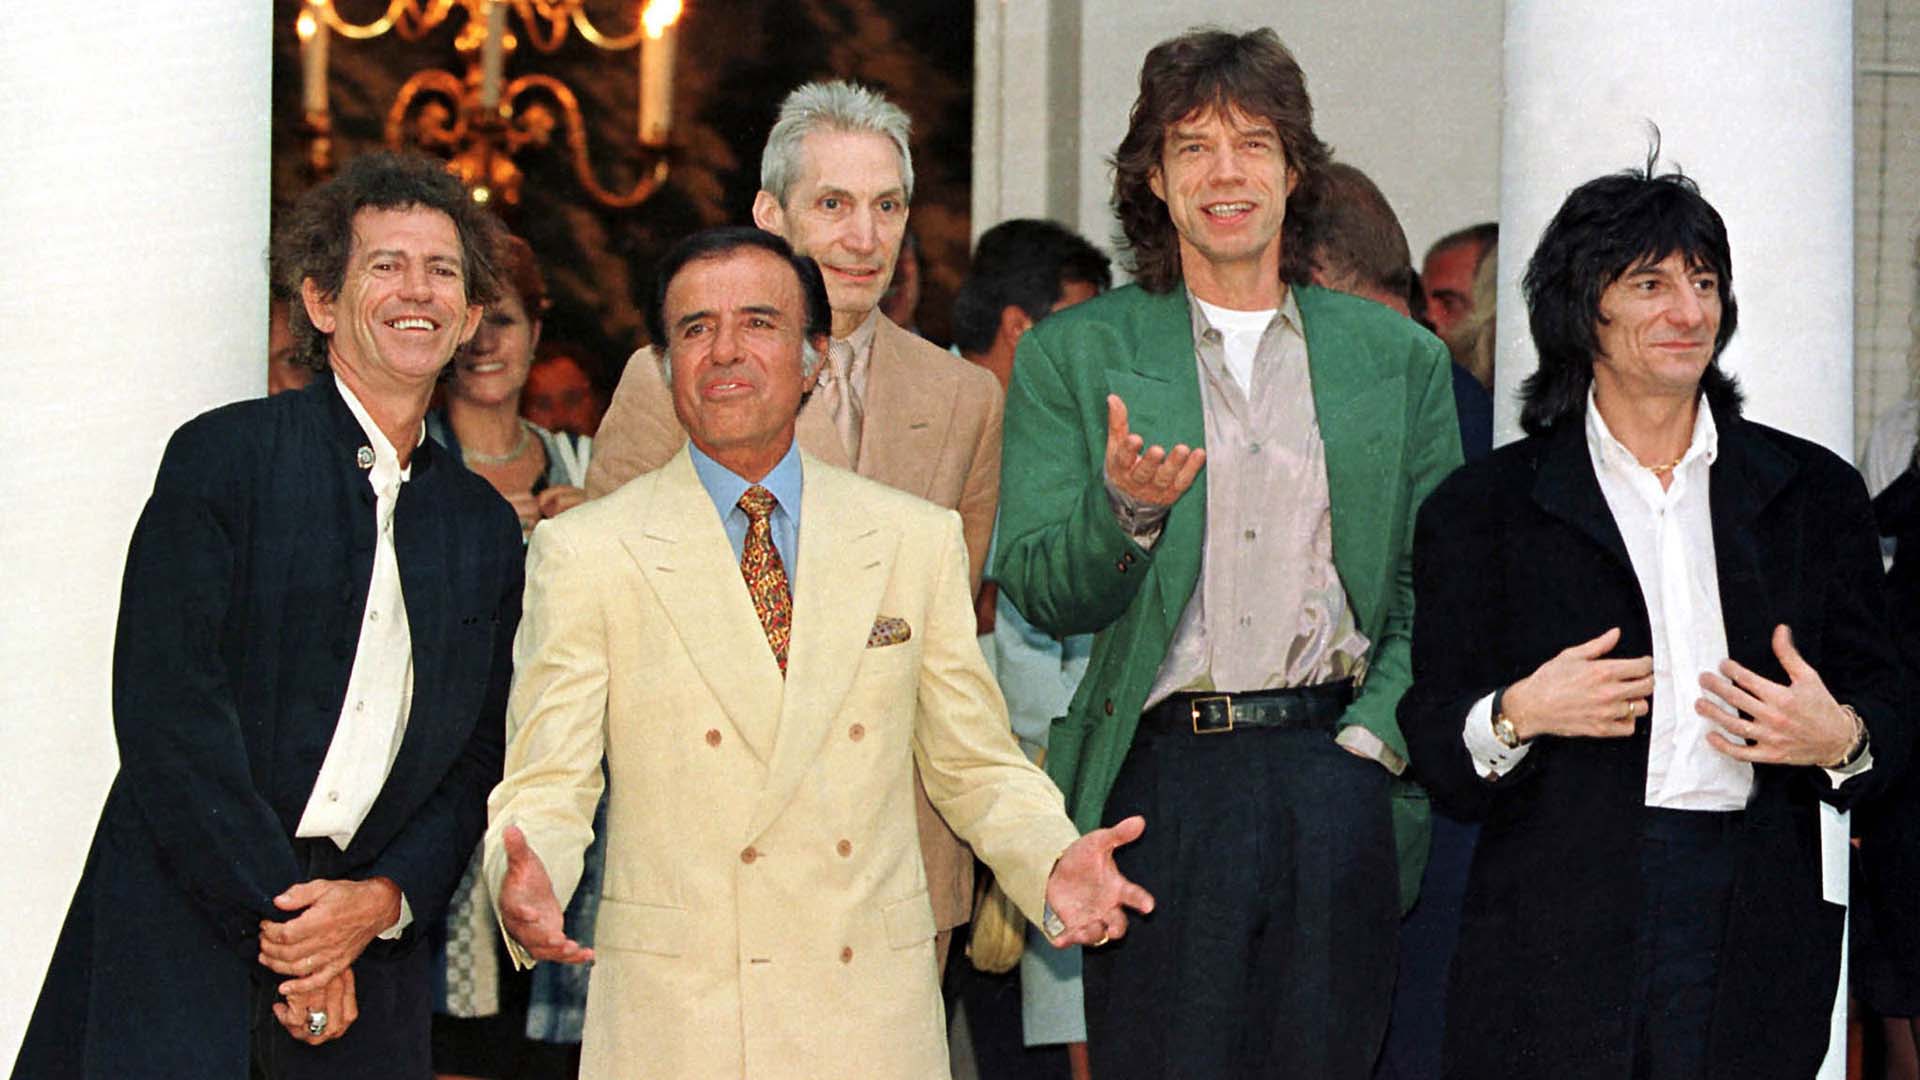 Los Rolling Stones visitaron la Argentina en 1995, antes de las elecciones en las que Menem buscaba su reelección. Keith Richards, Charlie Watts, Mick Jagger y Ron Wood fueron recibidos en la Quinta de Olivos, donde comieron pizza con el presidente y sus principales funcionarios